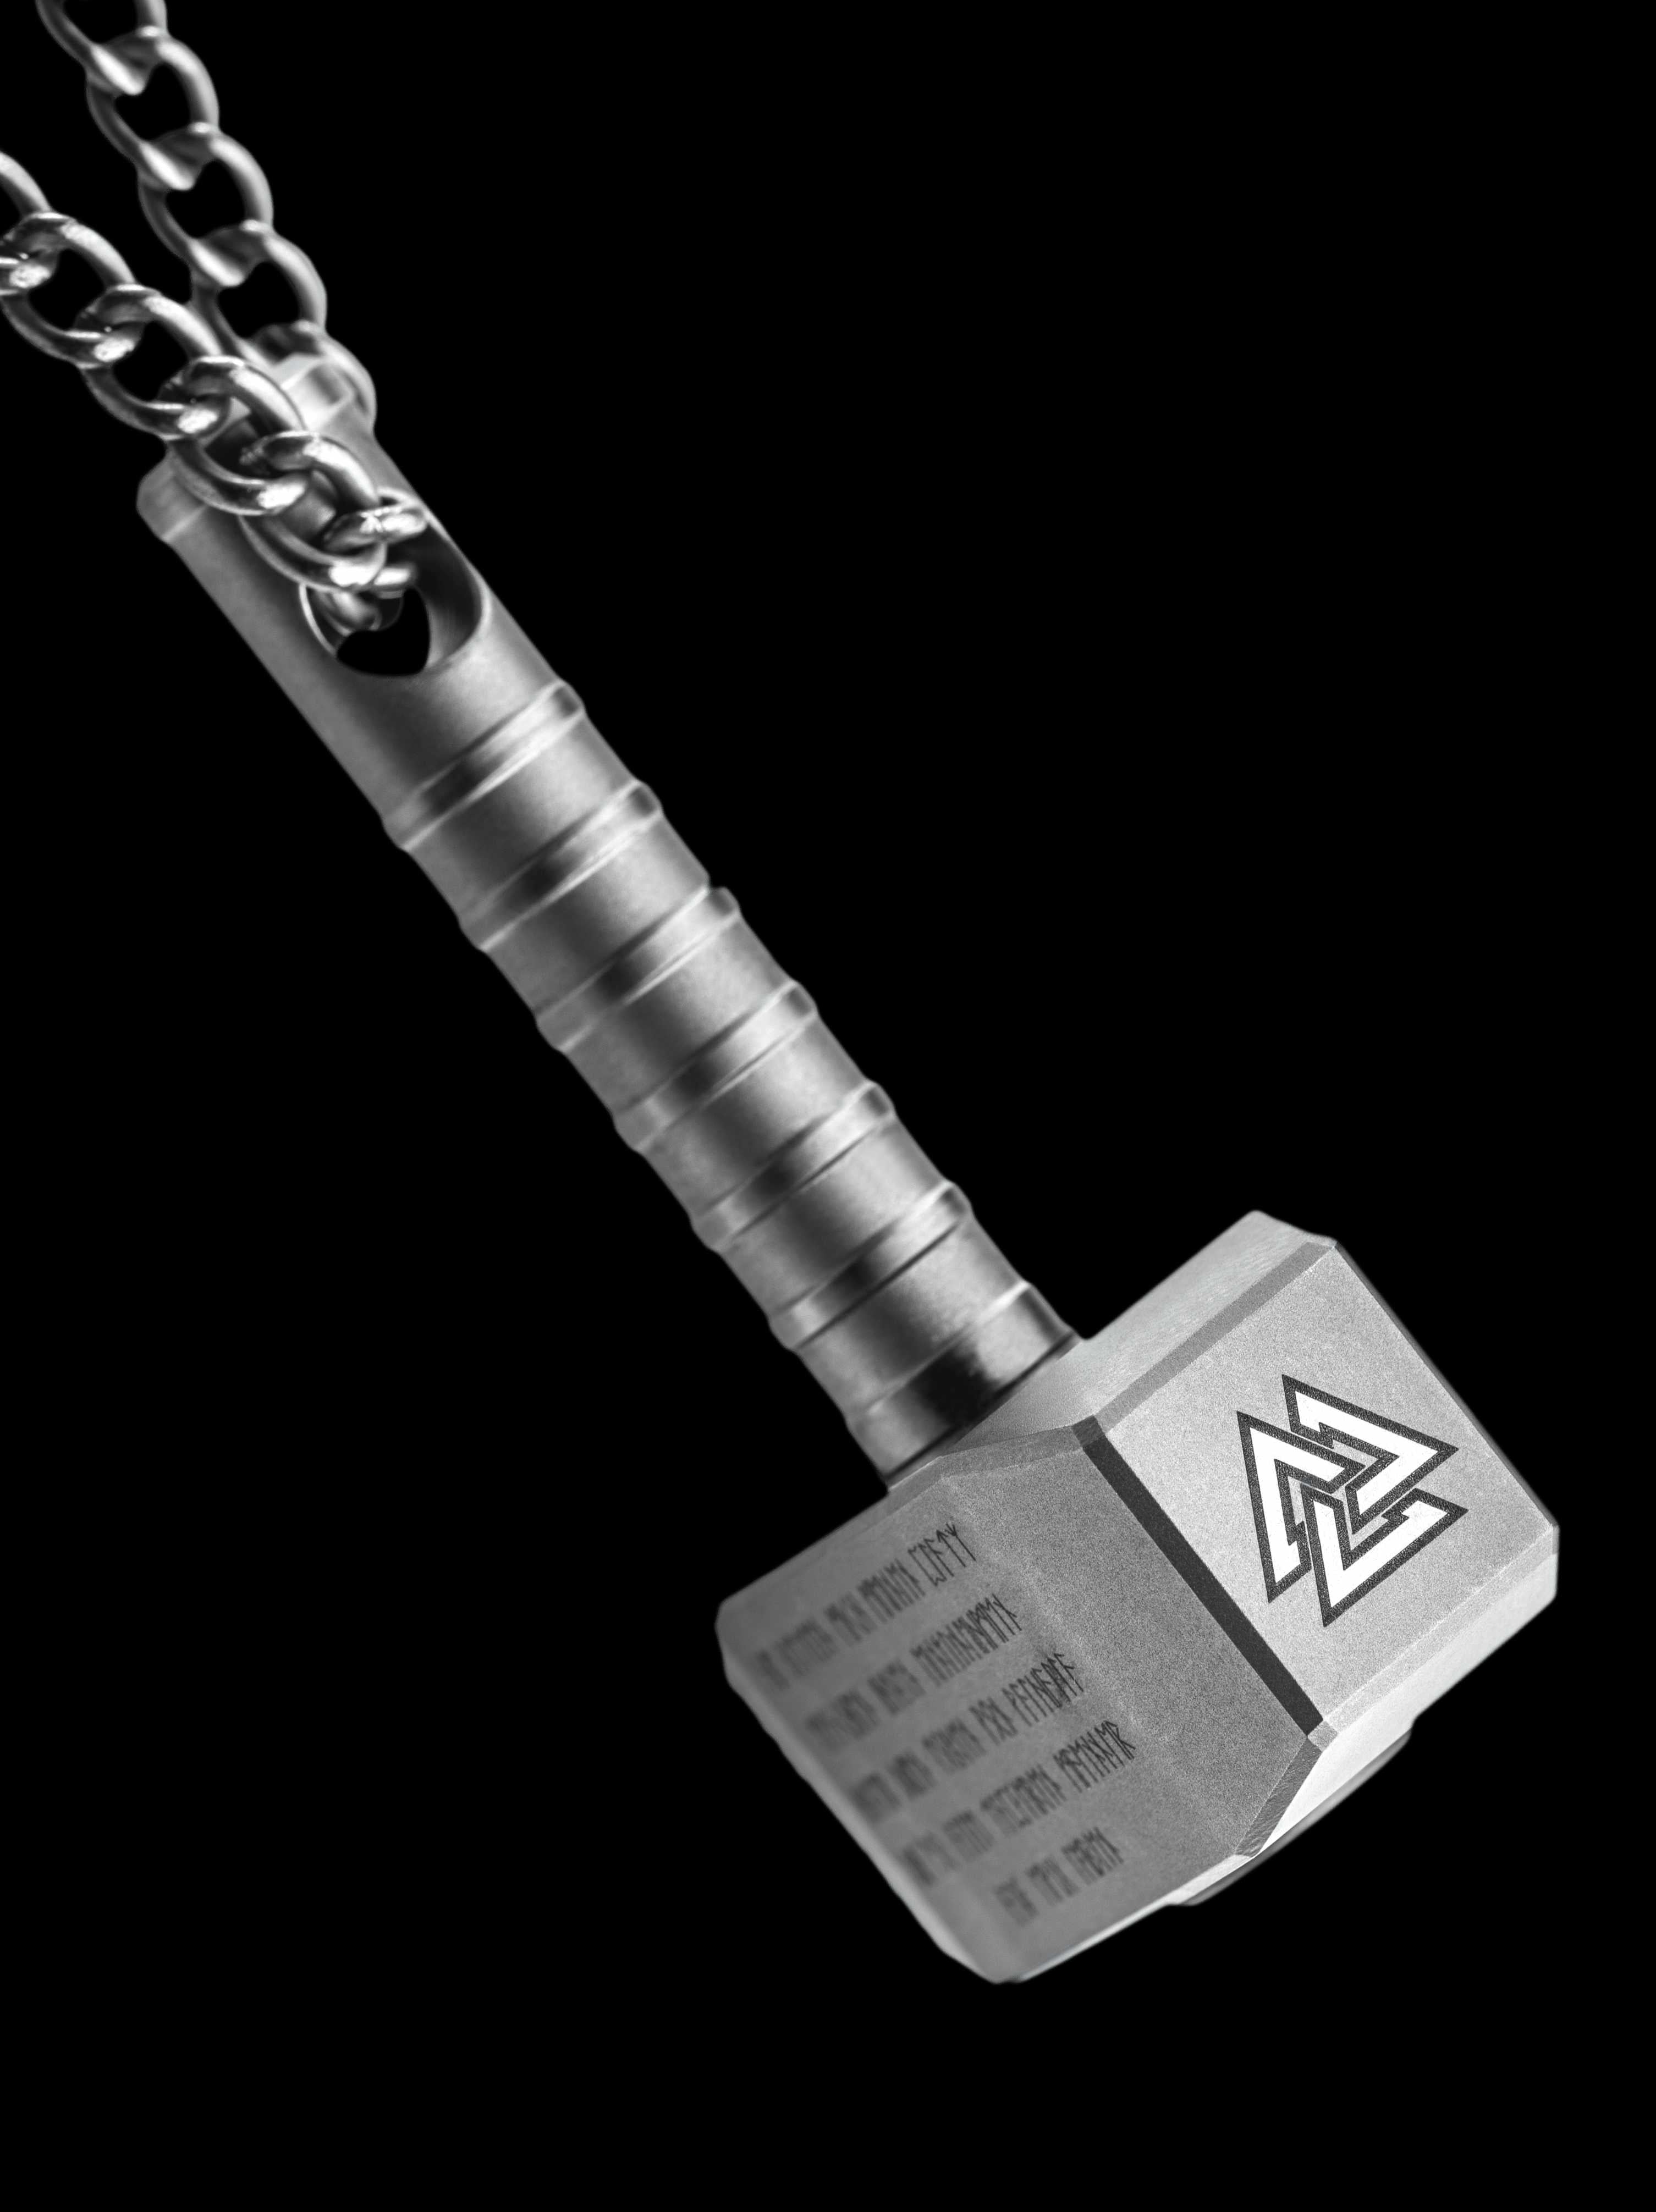 Titan Anhänger Thor Hammer Mjölnir mit Valknut und Runen an Titan Panzerkette in Seitenansicht